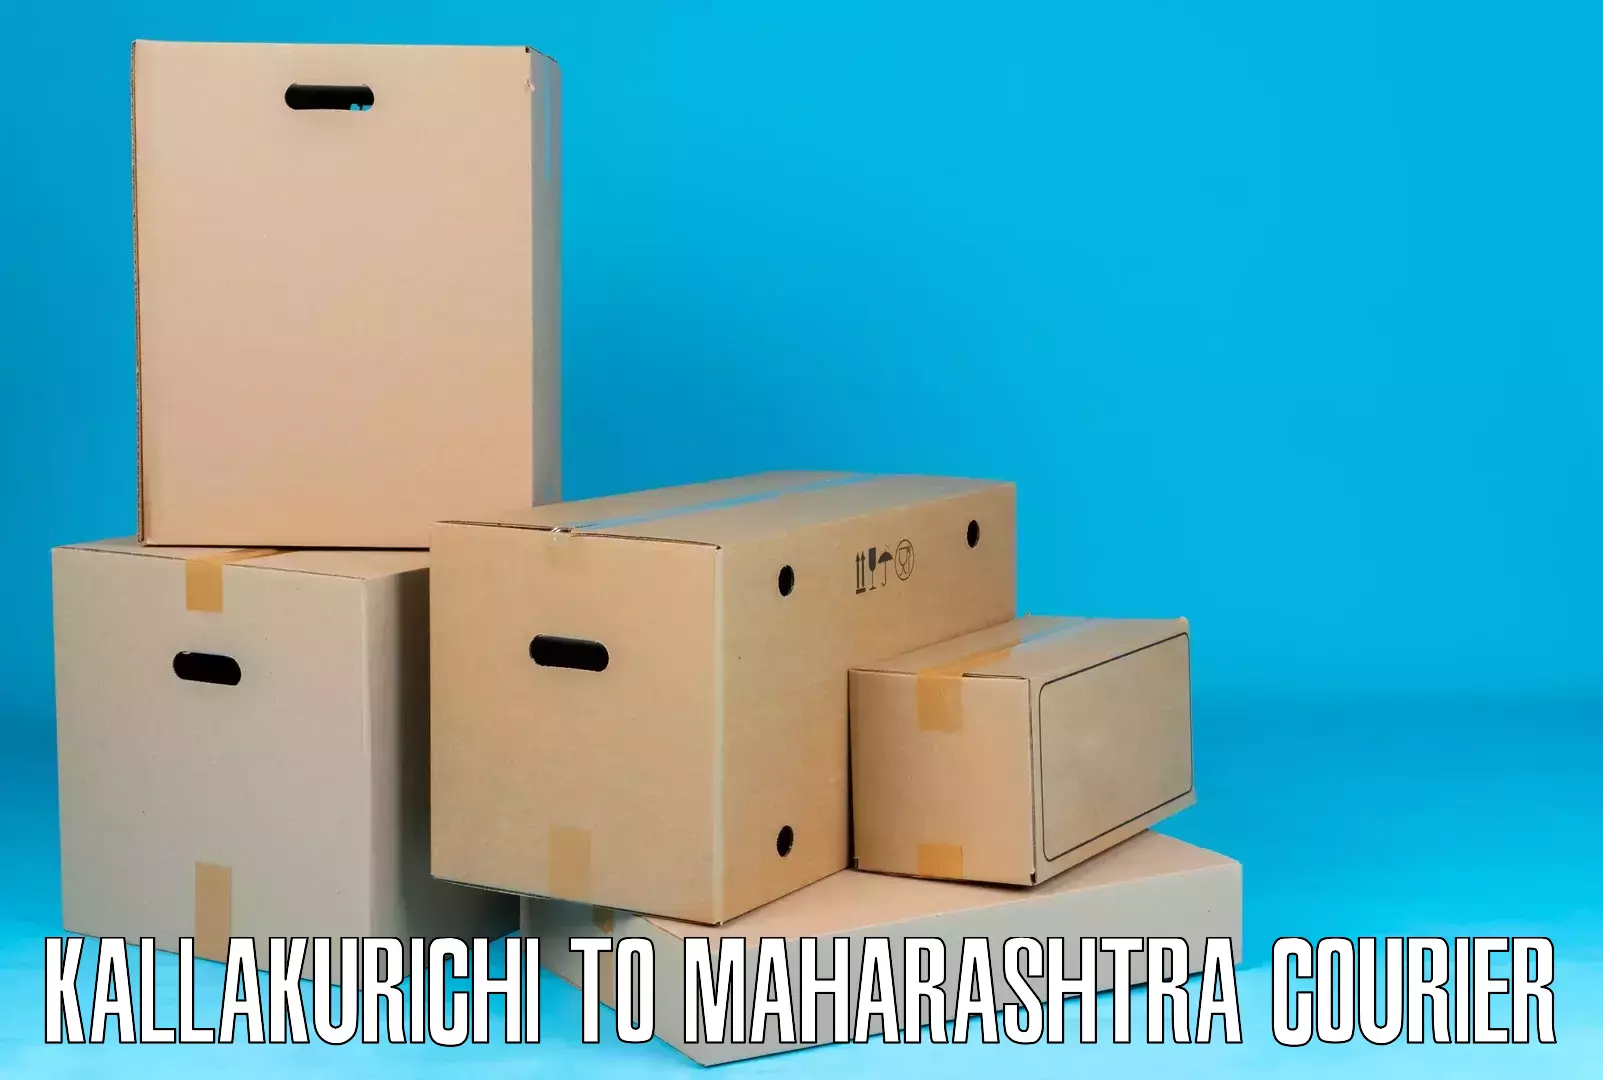 Lightweight parcel options Kallakurichi to Yeola